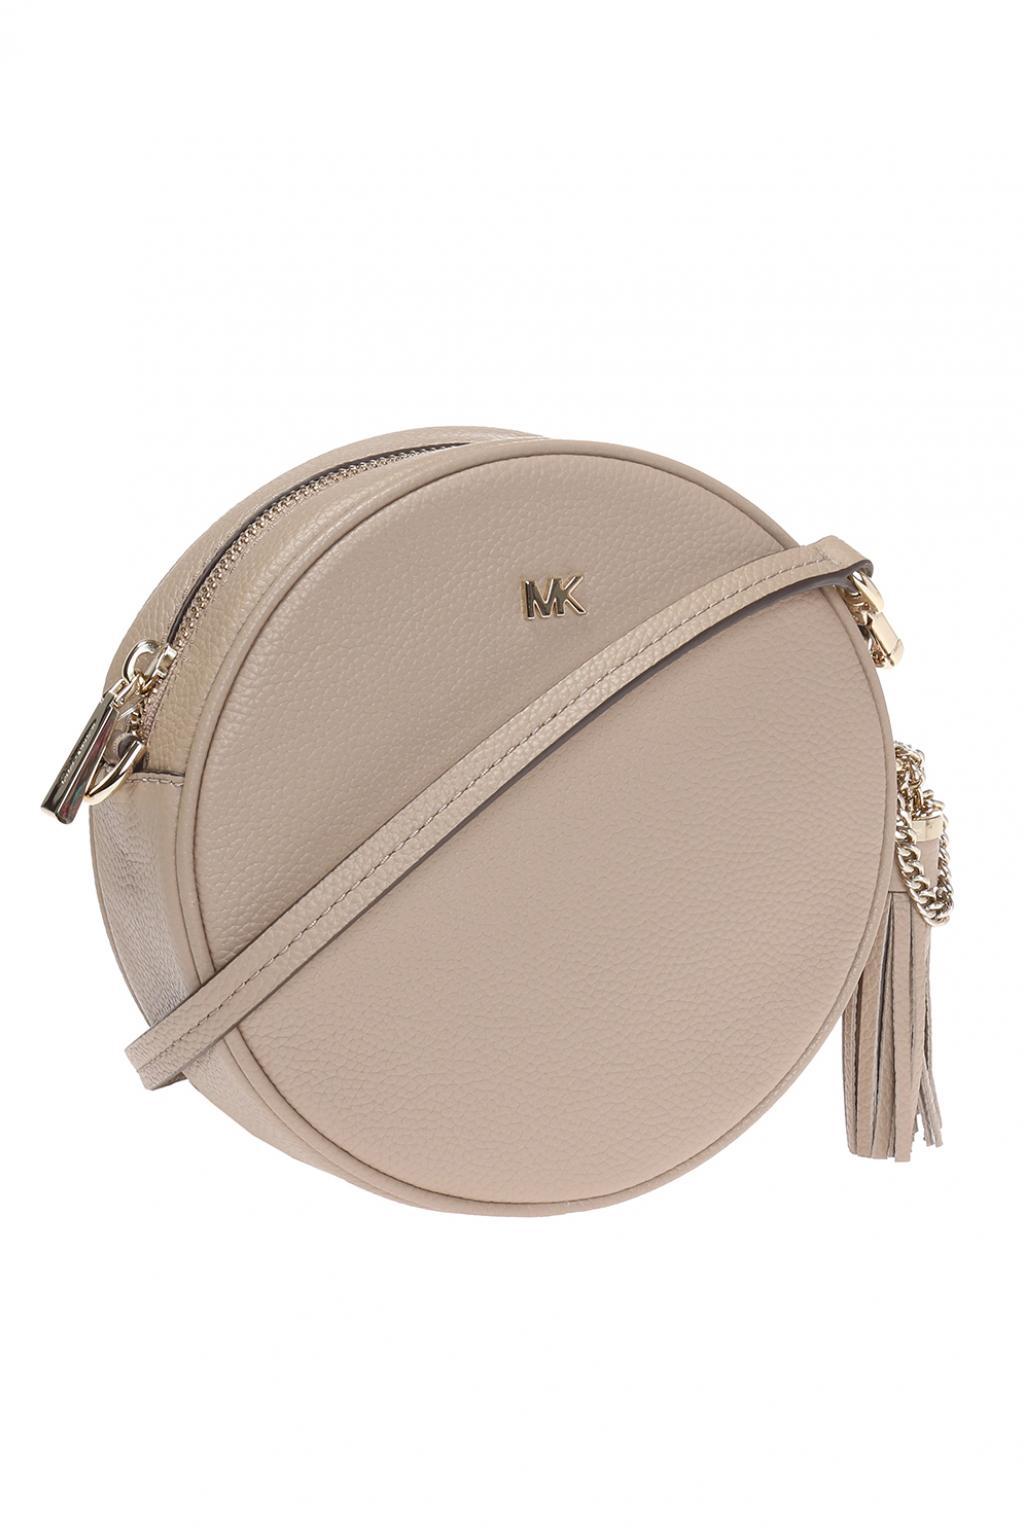 mk round purse